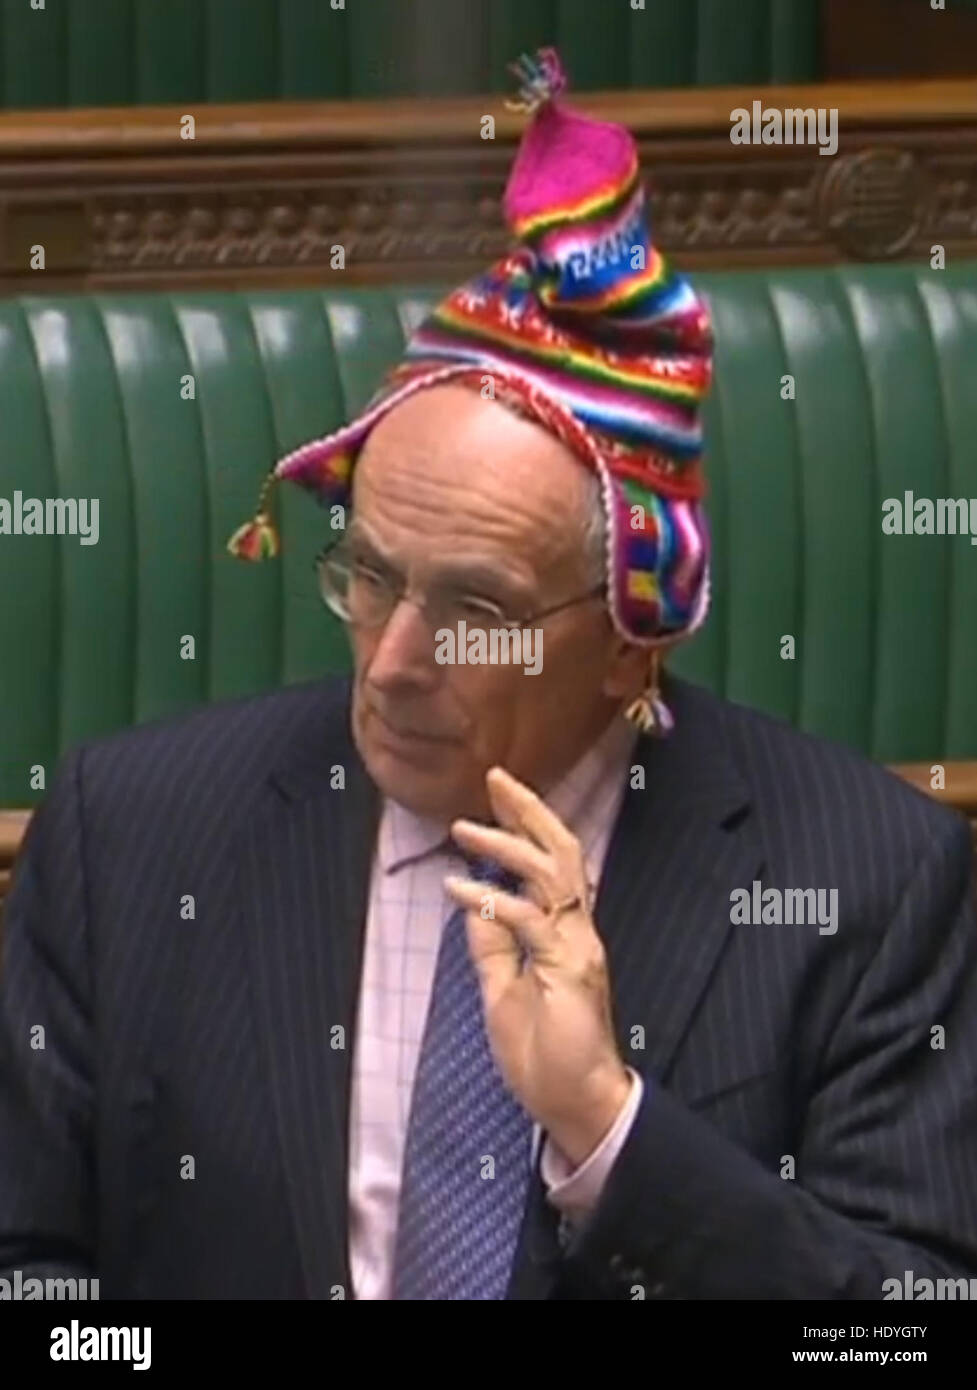 Peter l'os, le député conservateur de Wellingborough, porte un chapeau tout en saluant le travail d'un organisme de bienfaisance local, Crazy chapeaux, à la Chambre des communes, Londres. Banque D'Images